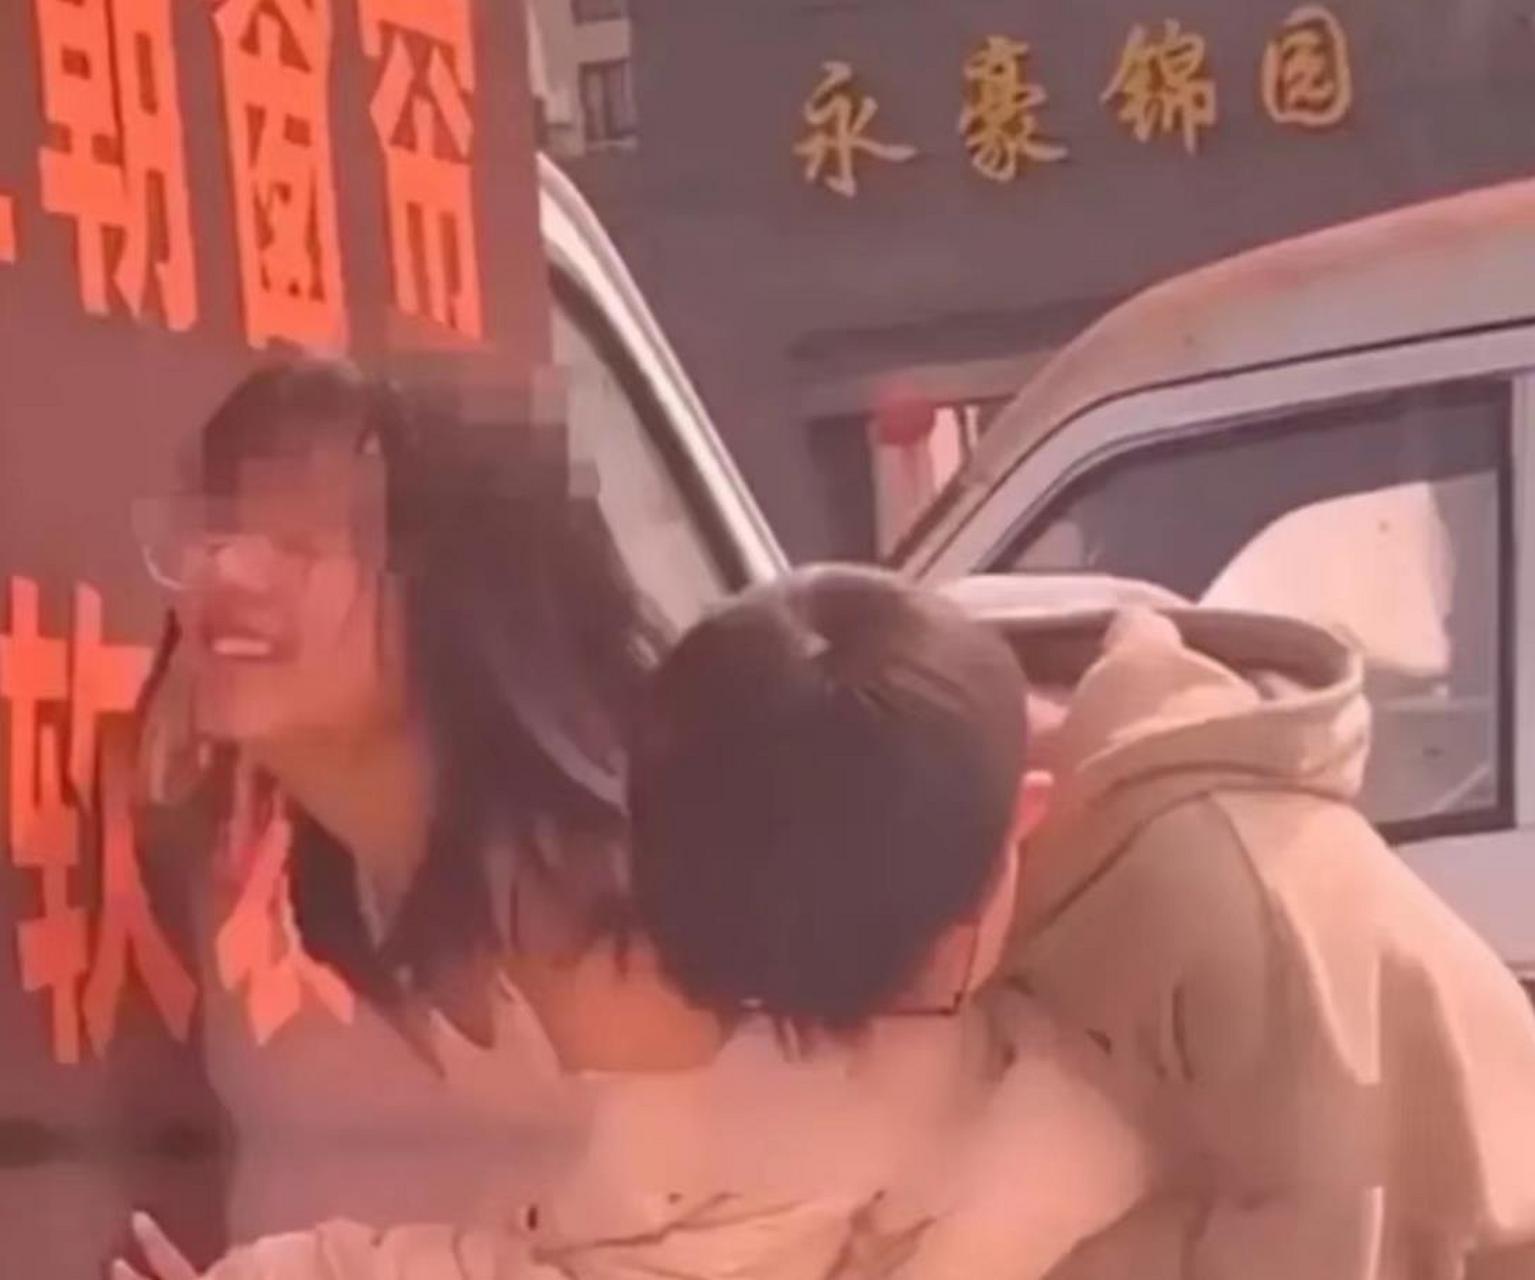 浙江温州一对中学情侣的不雅视频实在令人脸红羞耻,现在的学生到底